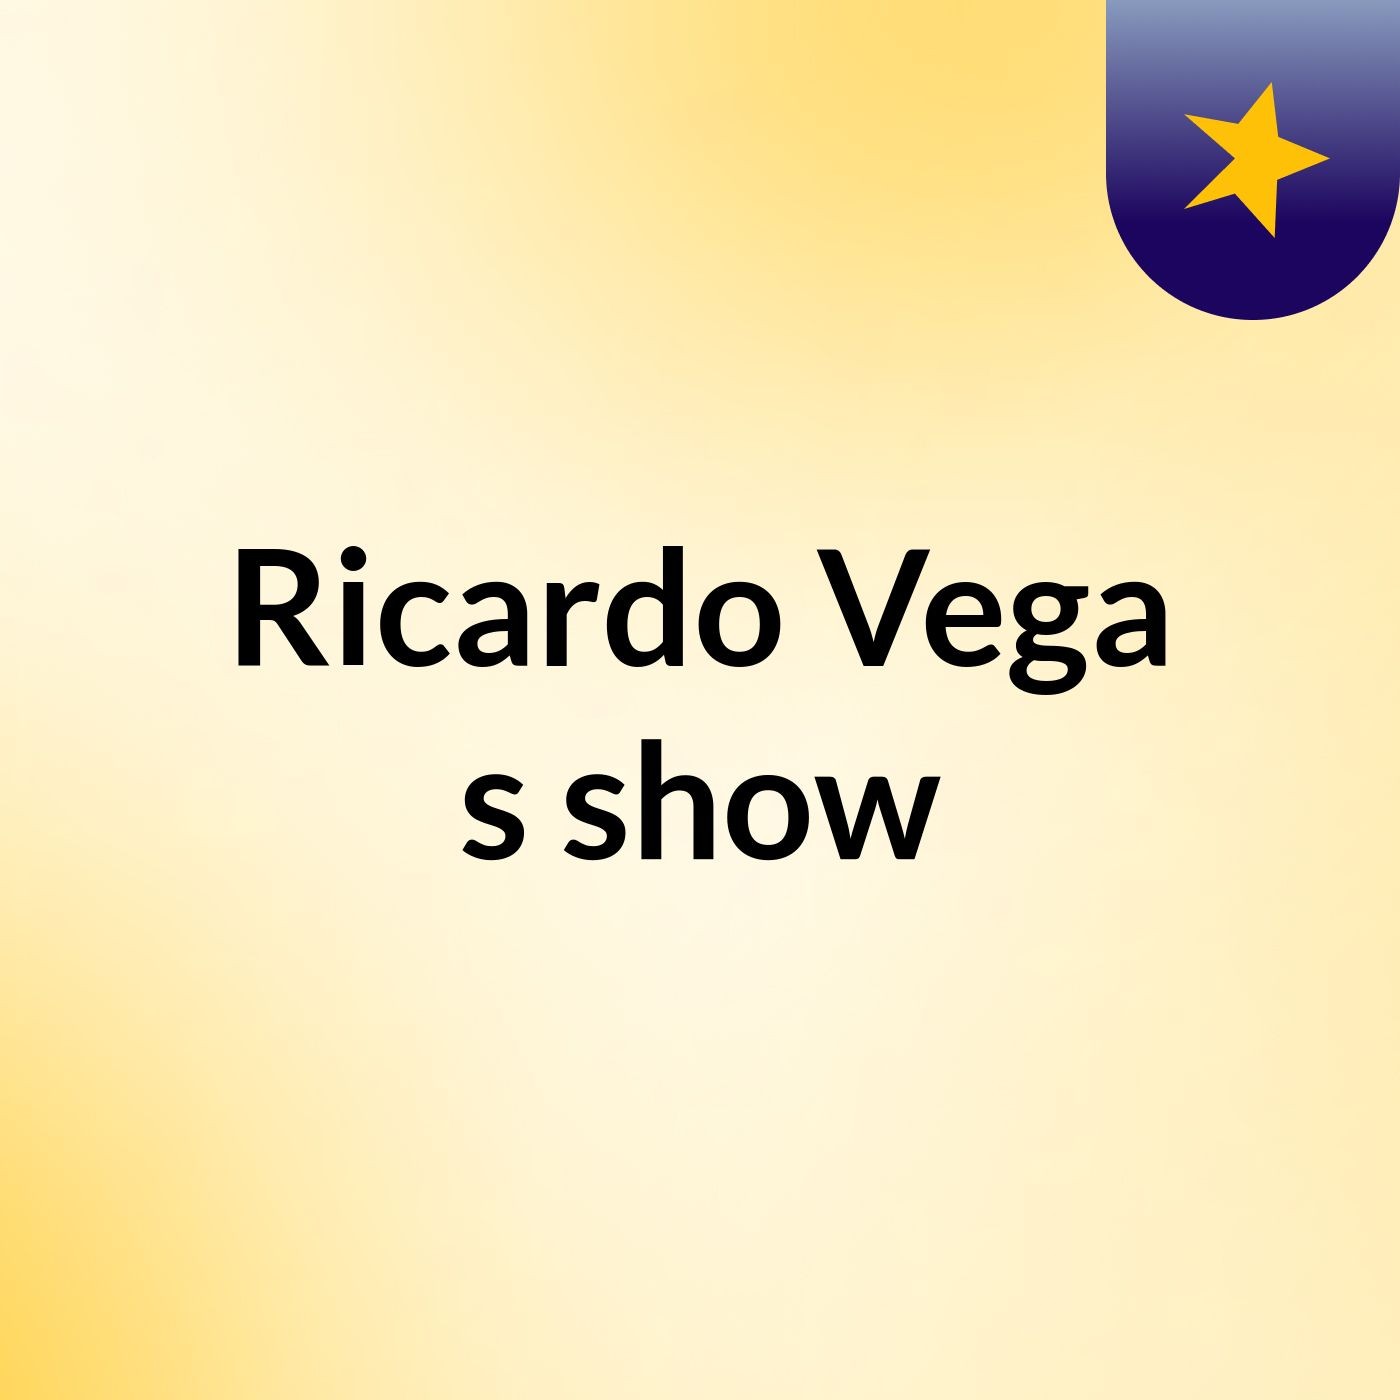 Ricardo Vega's show